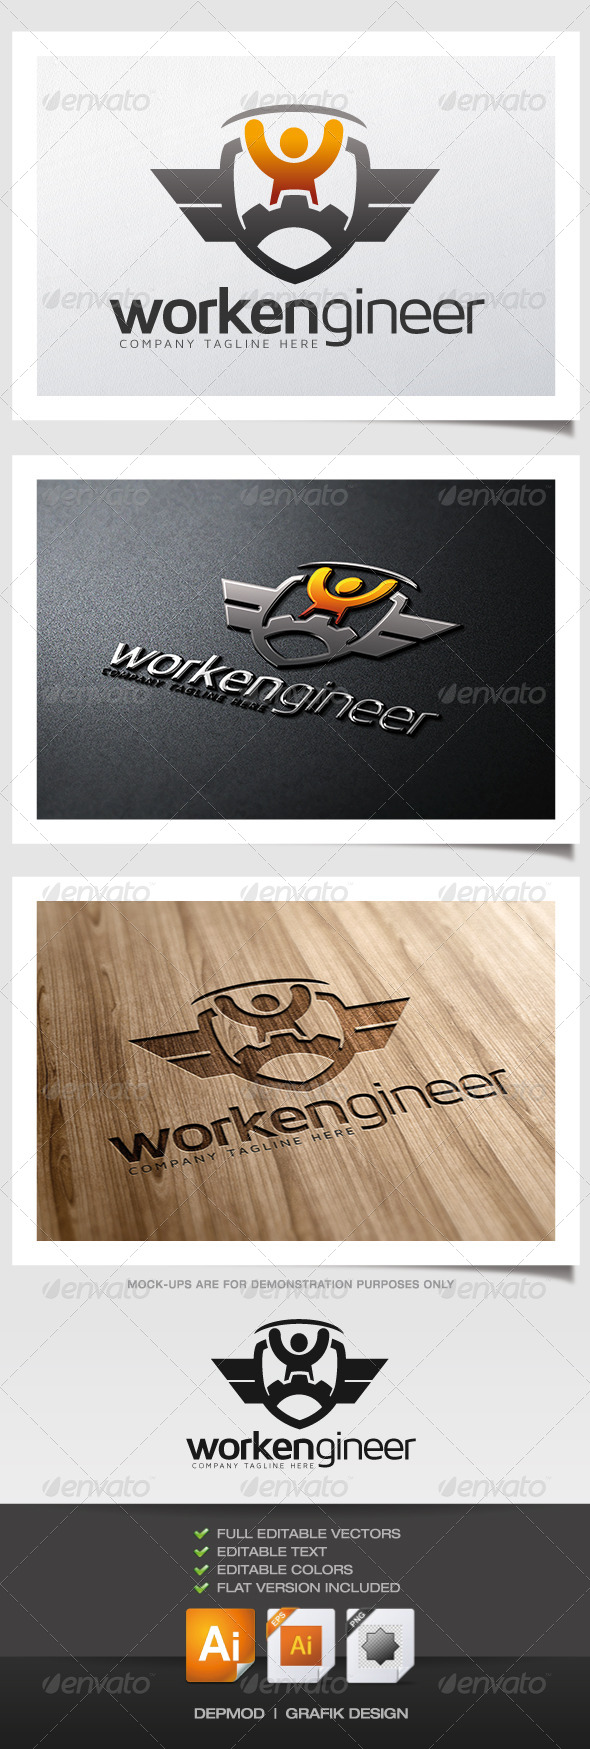 Workengineer Logo